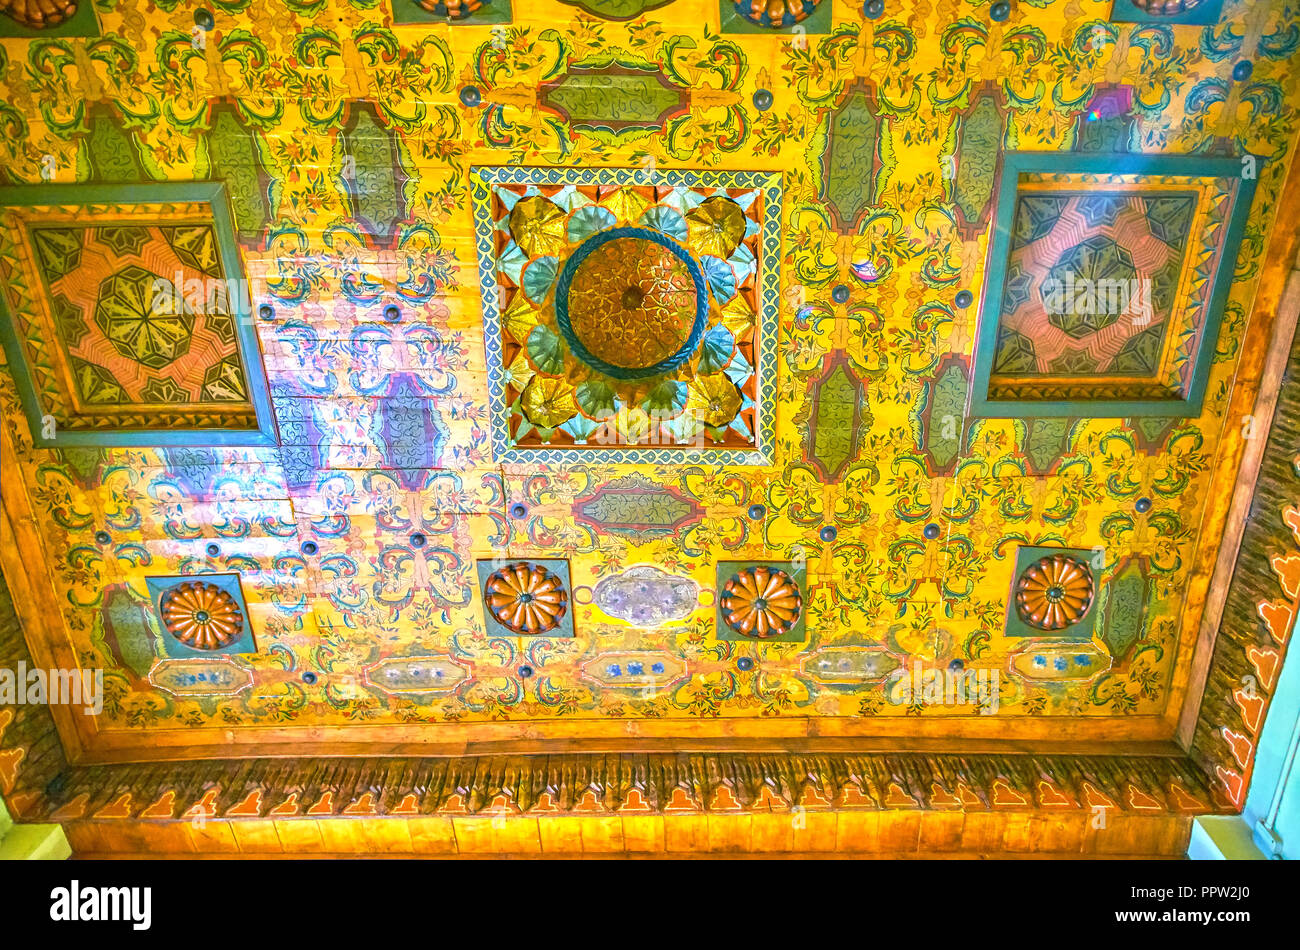 Le CAIRE, ÉGYPTE - Le 23 décembre 2017 : la belle décoration à motifs floraux du plafond en bois dans le Musée Copte, le 23 décembre au Caire Banque D'Images